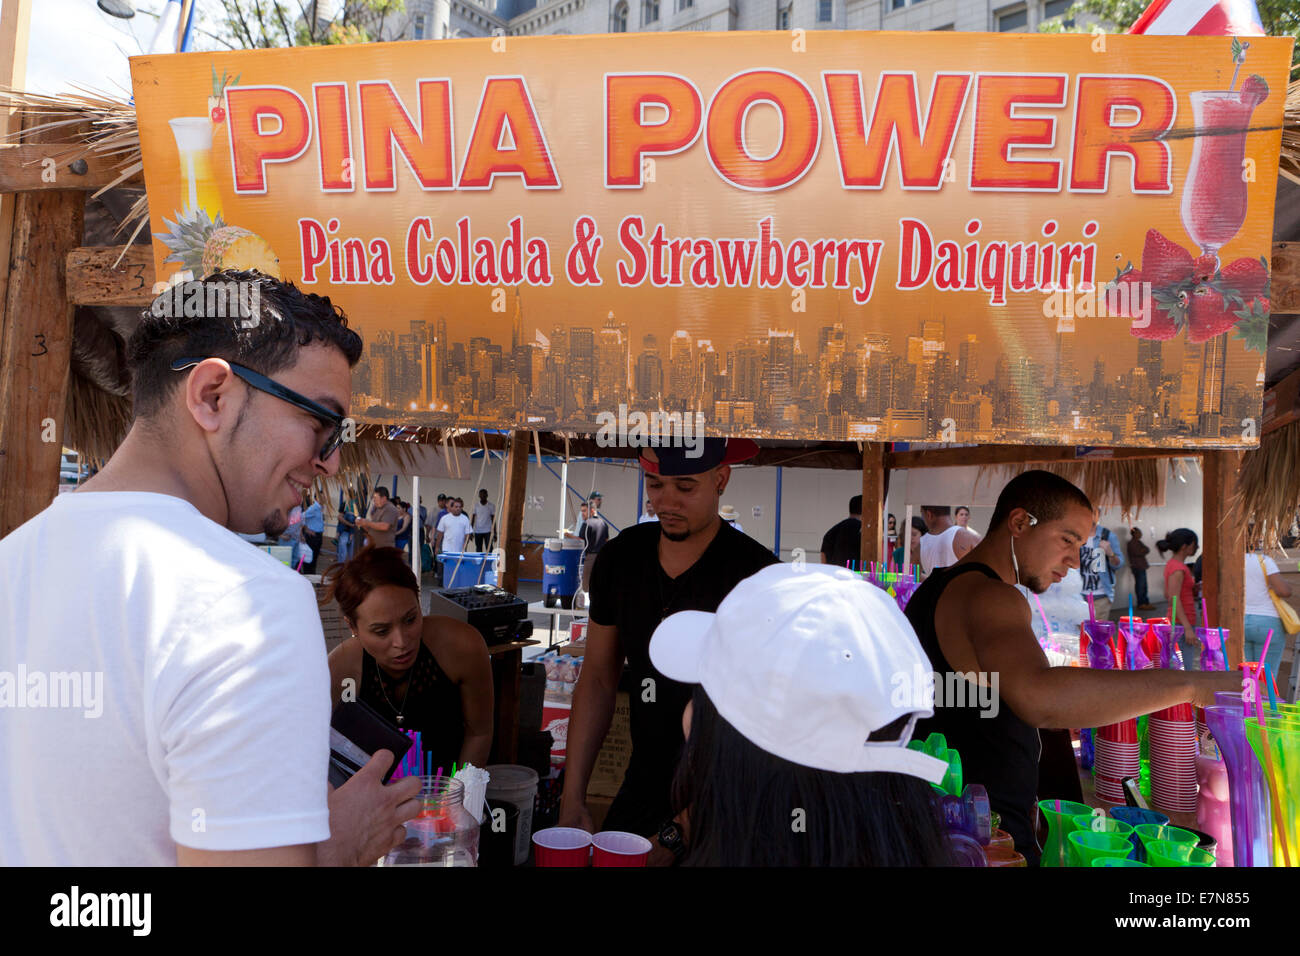 Pina colada and Strawberry daiquiri vendor - USA Stock Photo